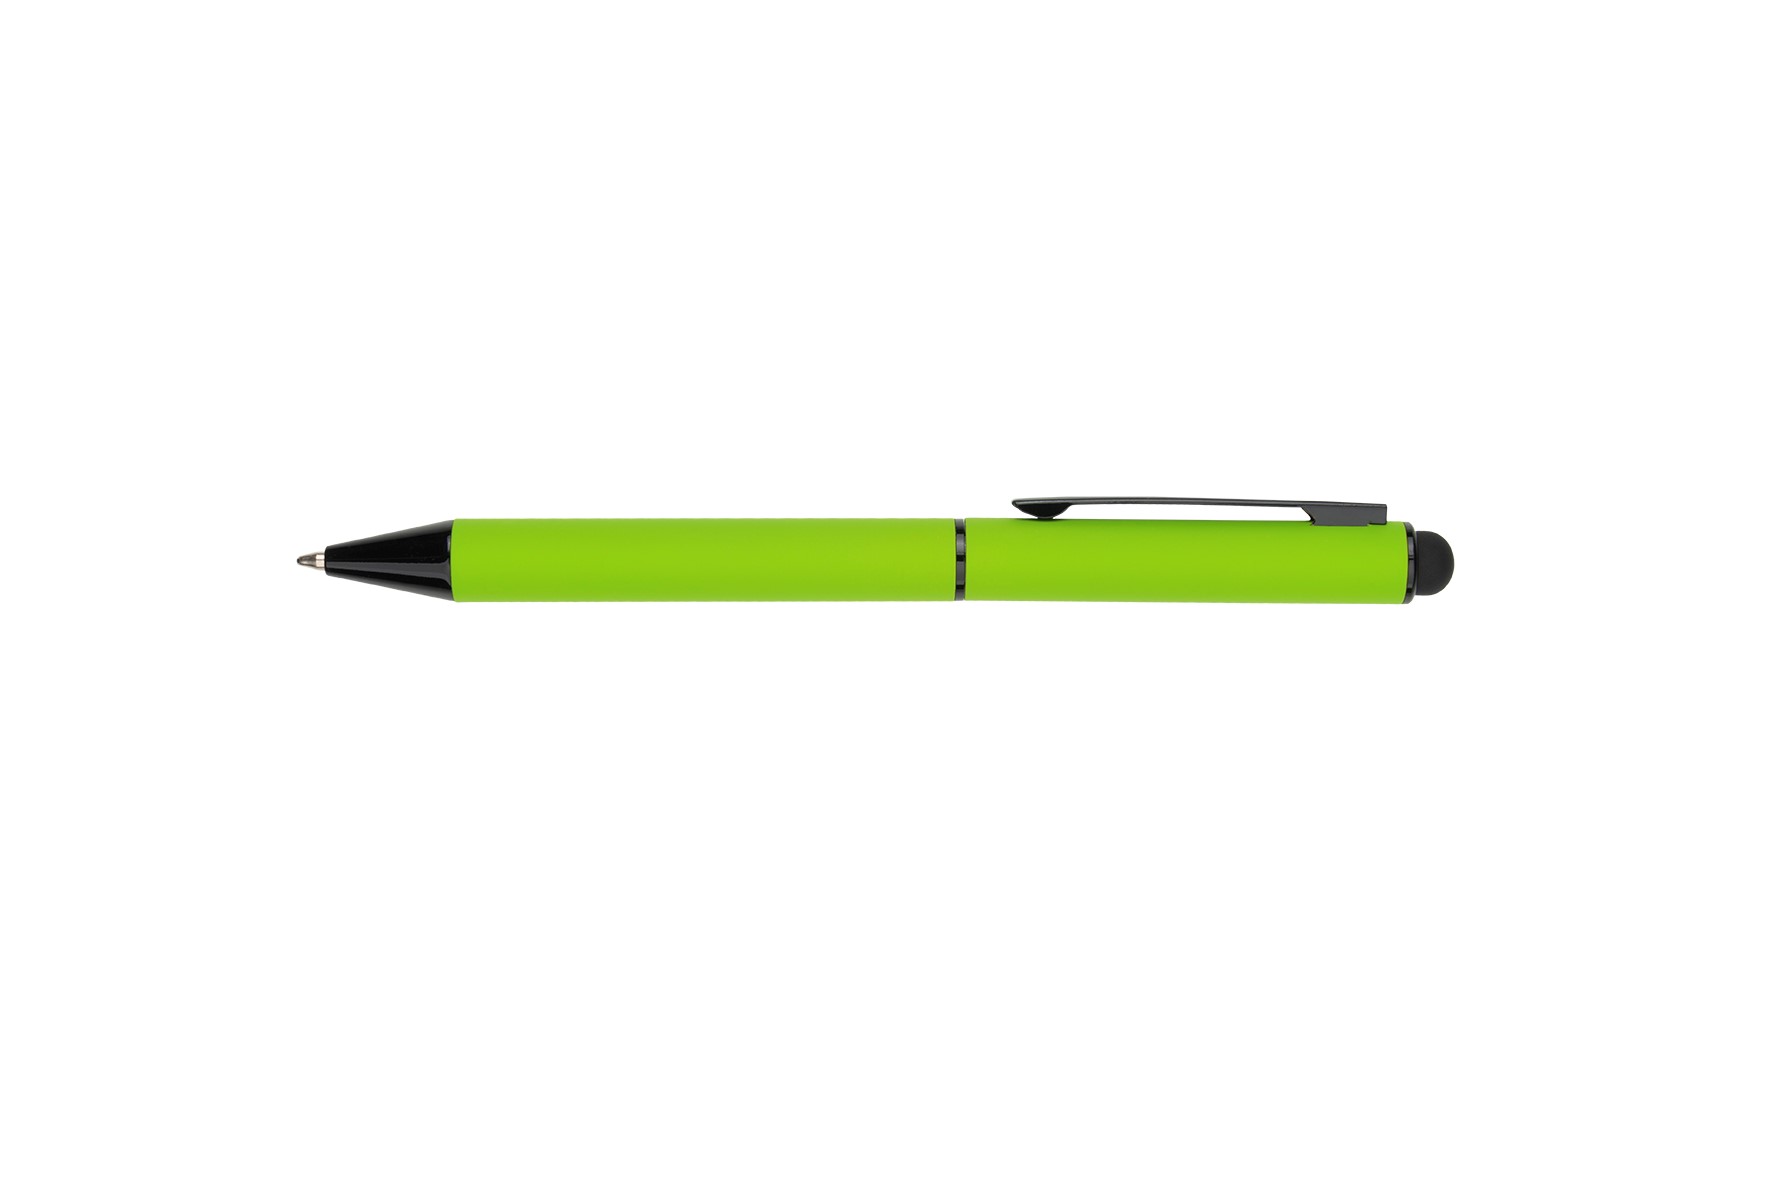 Металлическая ручка со стилусом CELEBRATION Pierre Cardin